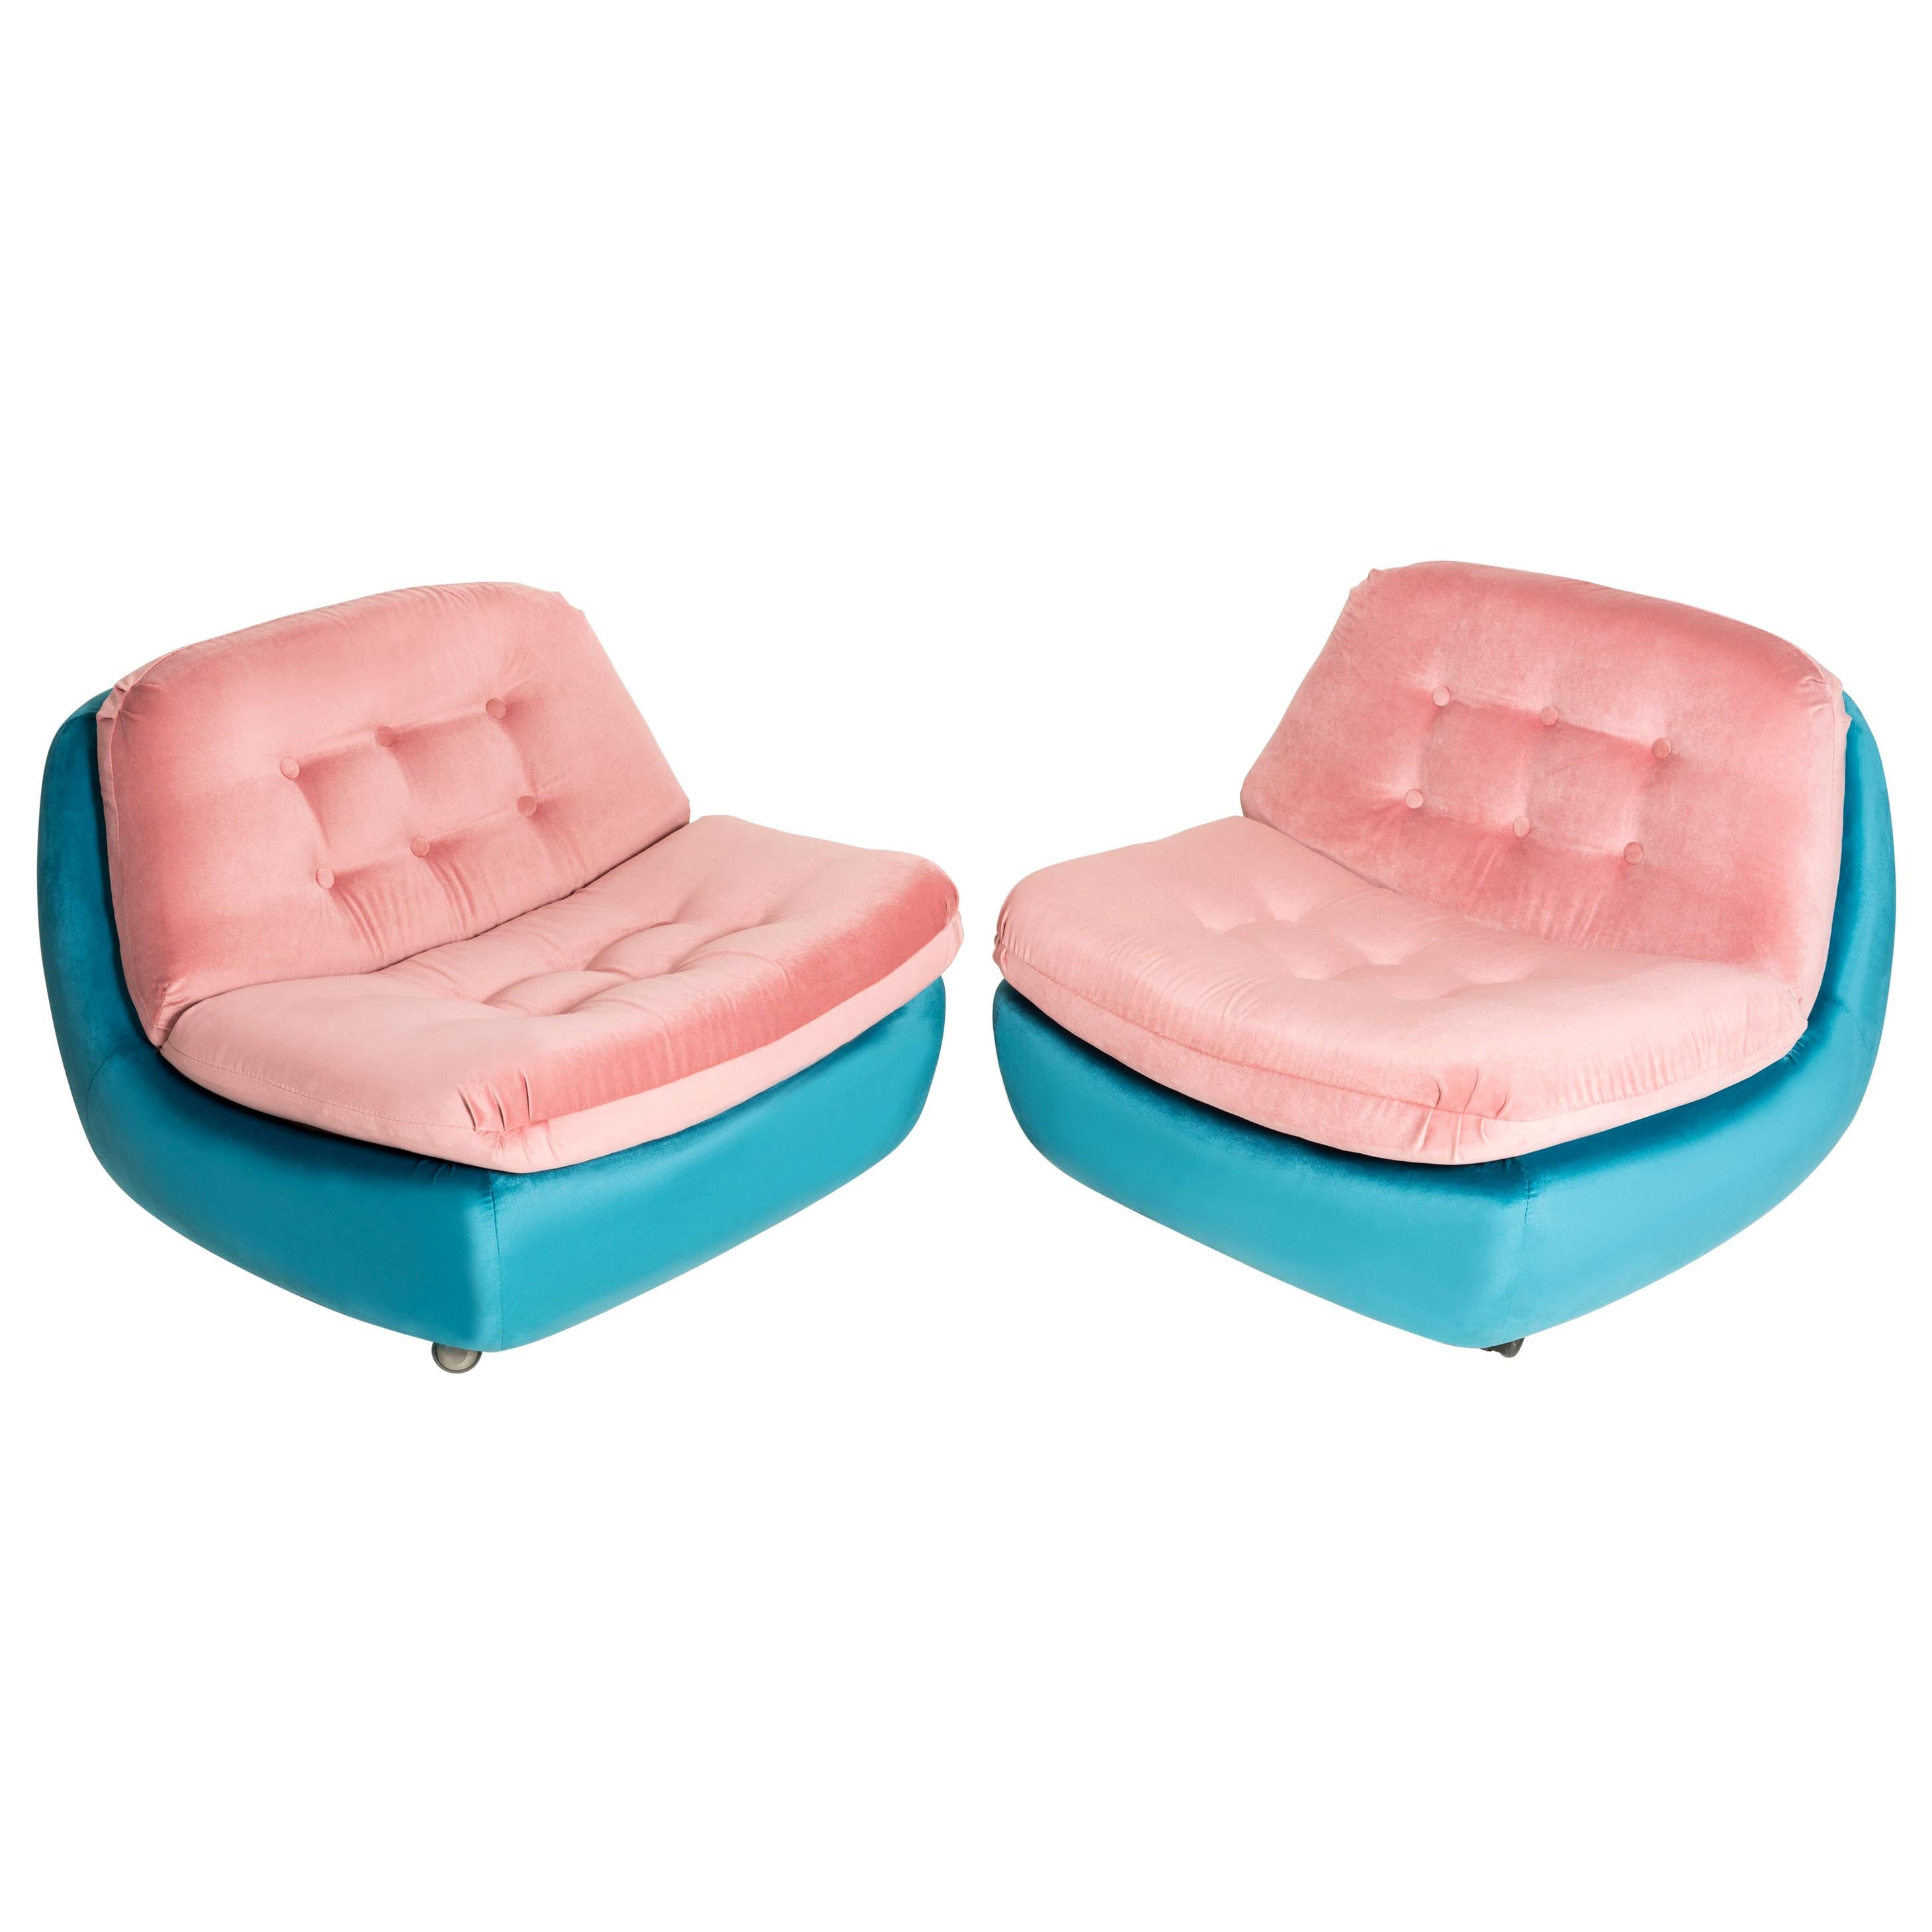 Zwei rosa und blaue Atlantis-Sessel des 20. Jahrhunderts, 1960er Jahre